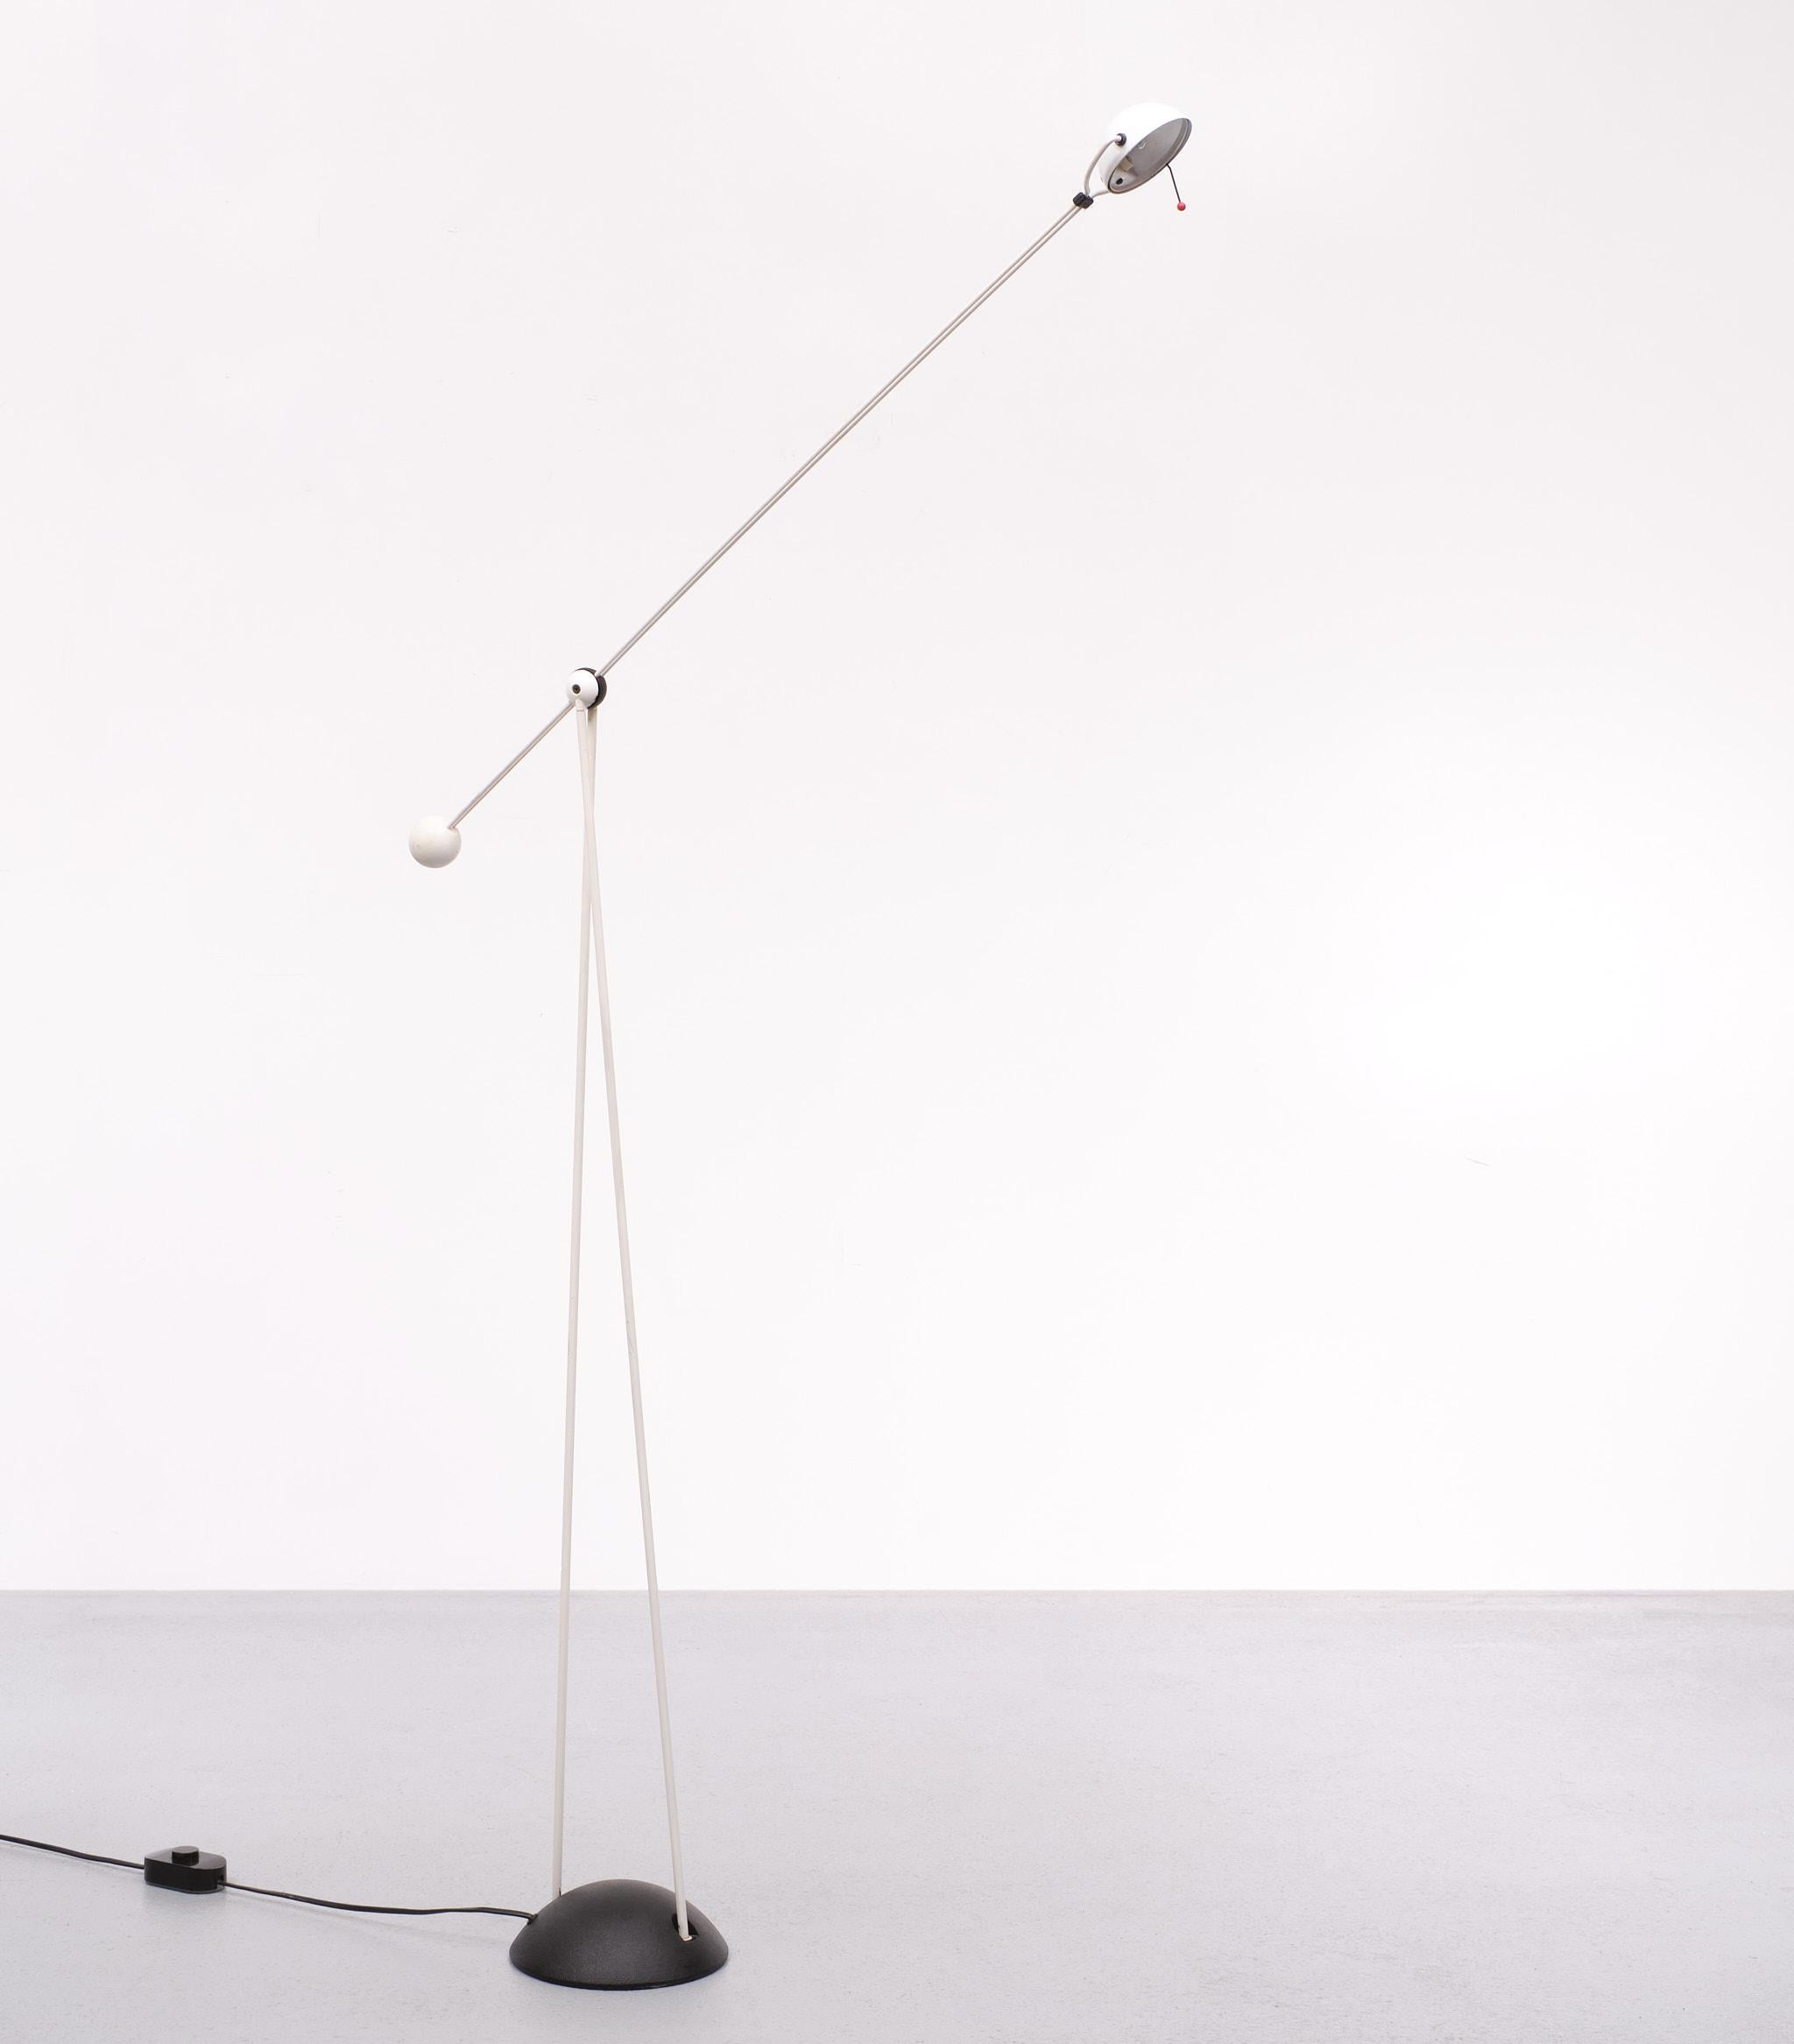 Lampe produite dans les années 1980 par Stefano Cevoli d'après un design de Paolo Francesco Piva. modèle Yuki Base hémisphérique en métal peint en noir. Double tige en métal peint en noir qui croise une autre tige pivotante ayant un diffuseur à une